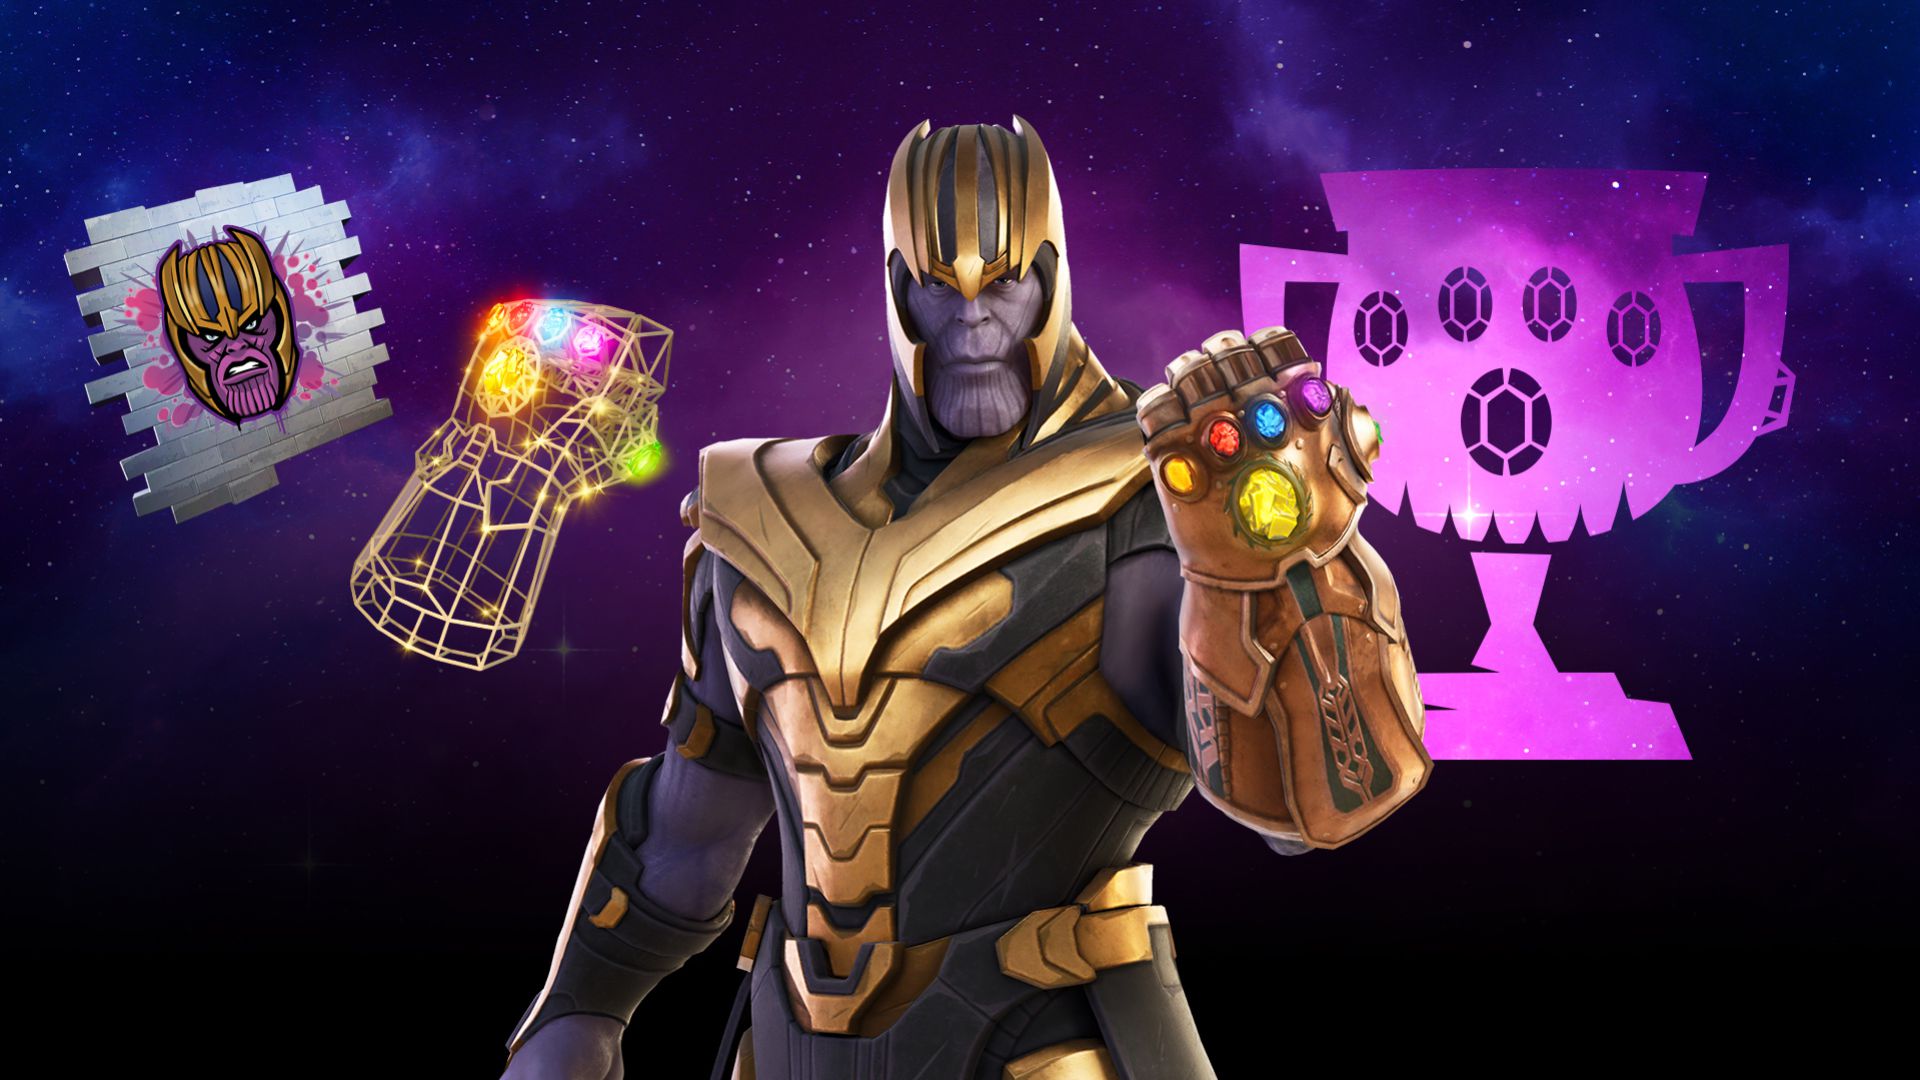 Thanoes In Fortnite Copa Thanos En Fortnite Fechas Horarios Y Como Conseguir Gratis Su Skin Meristation